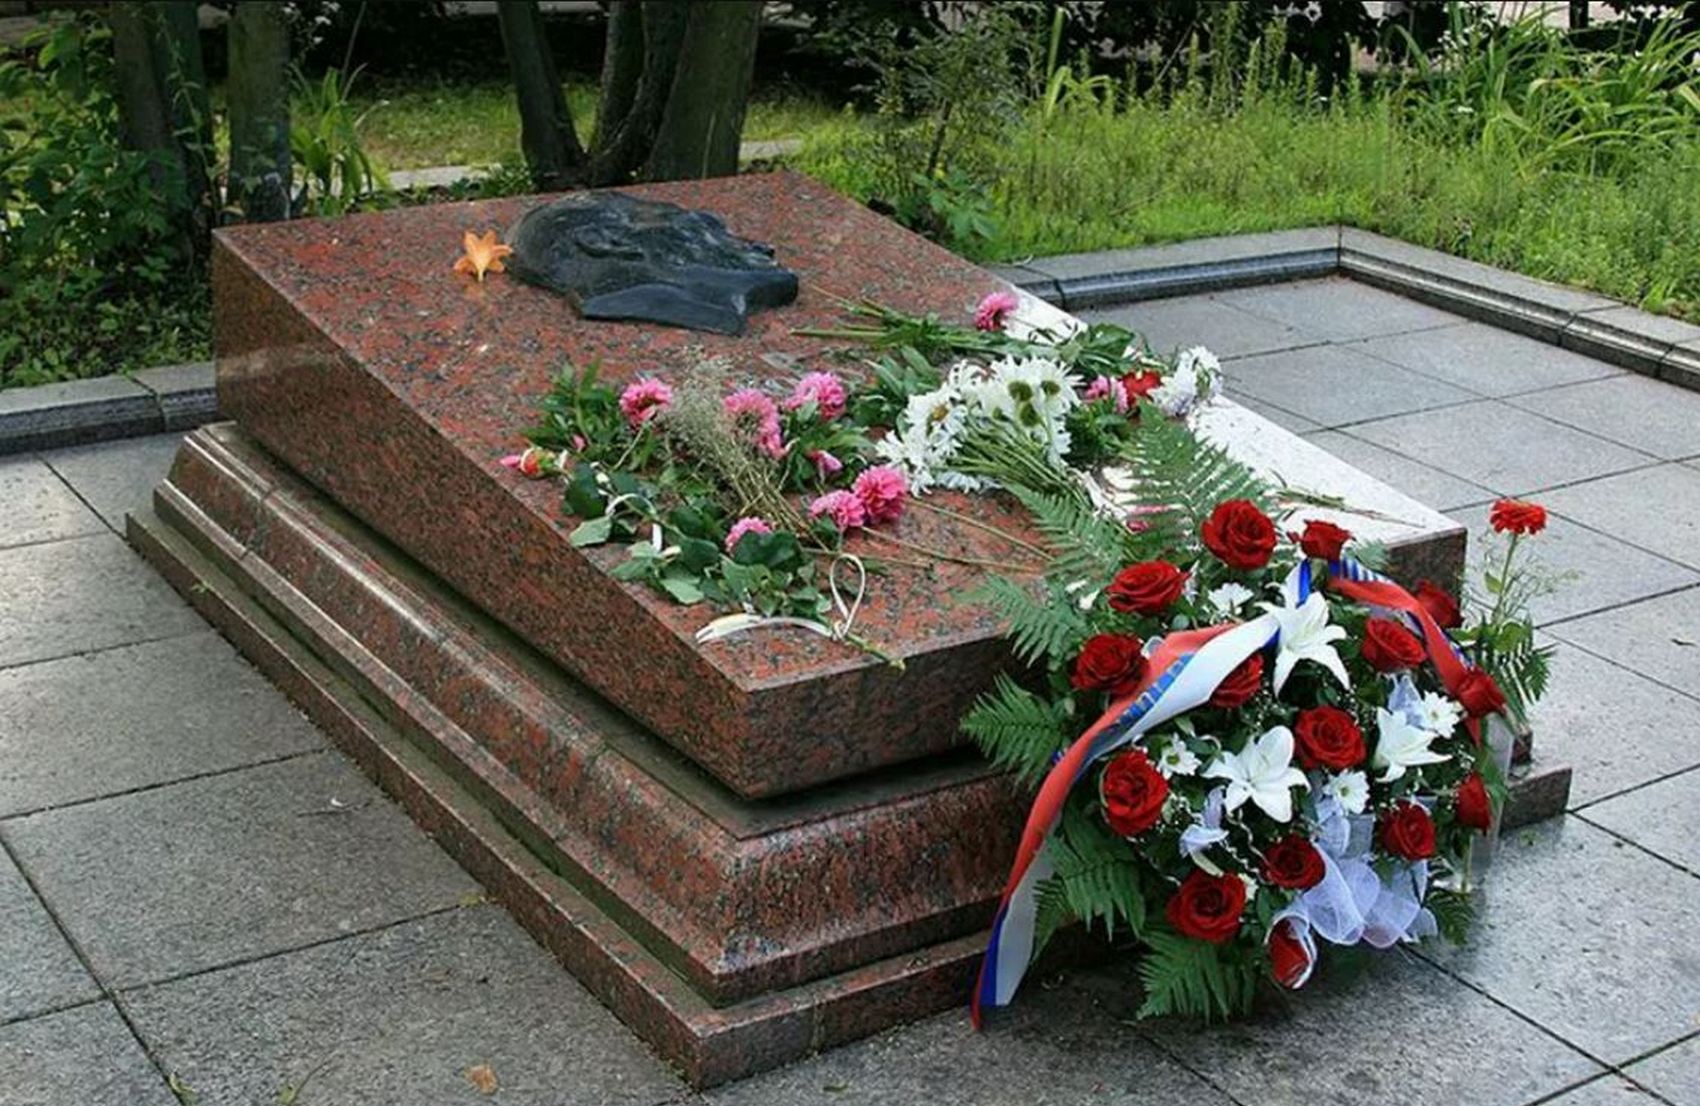 Мэр Львова отказался передавать останки советского разведчика, несмотря на решение суда